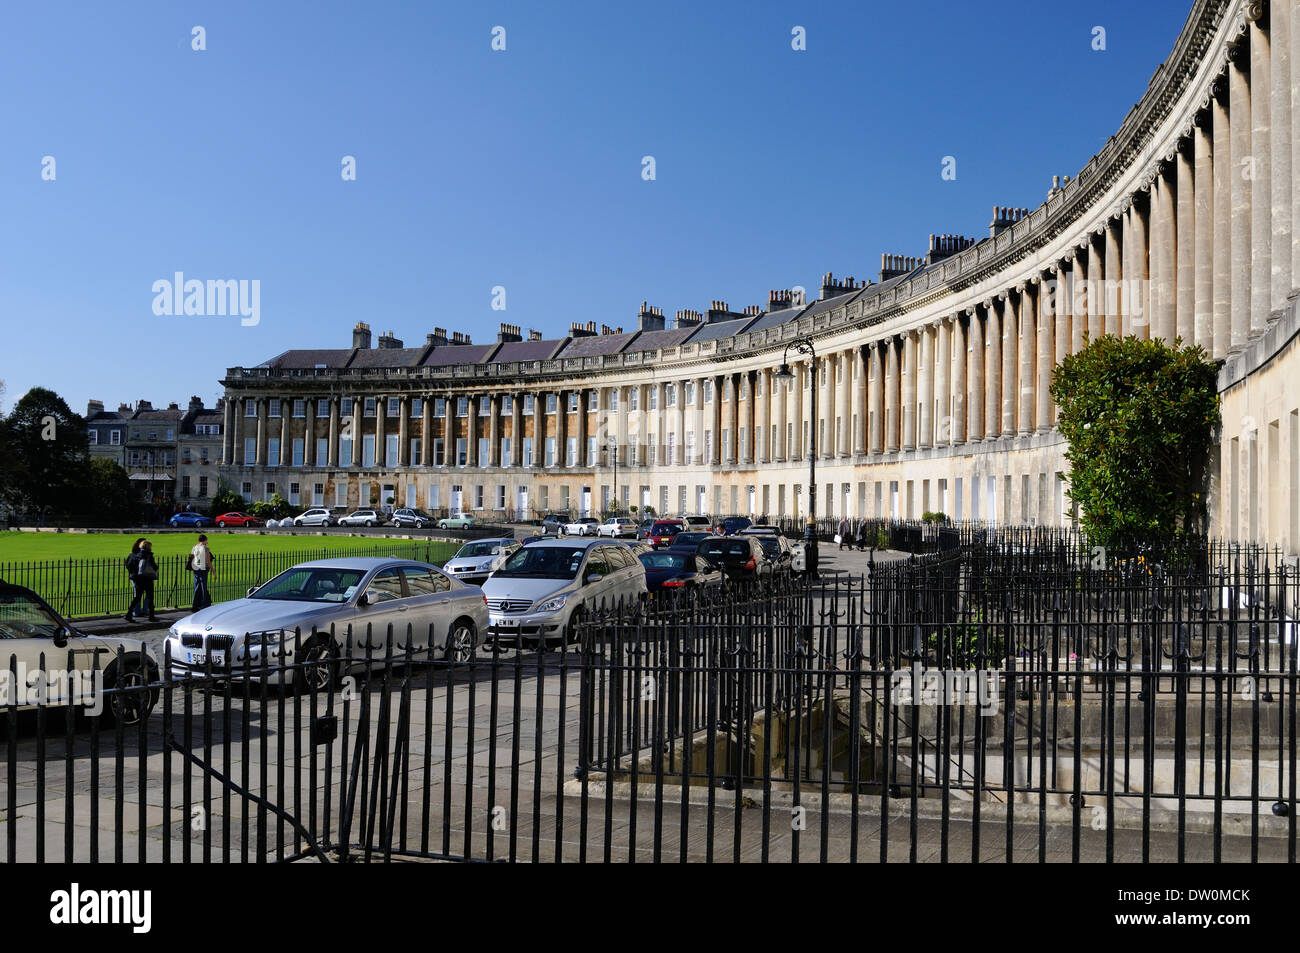 Royal Crescent Bath sous un ciel bleu Banque D'Images